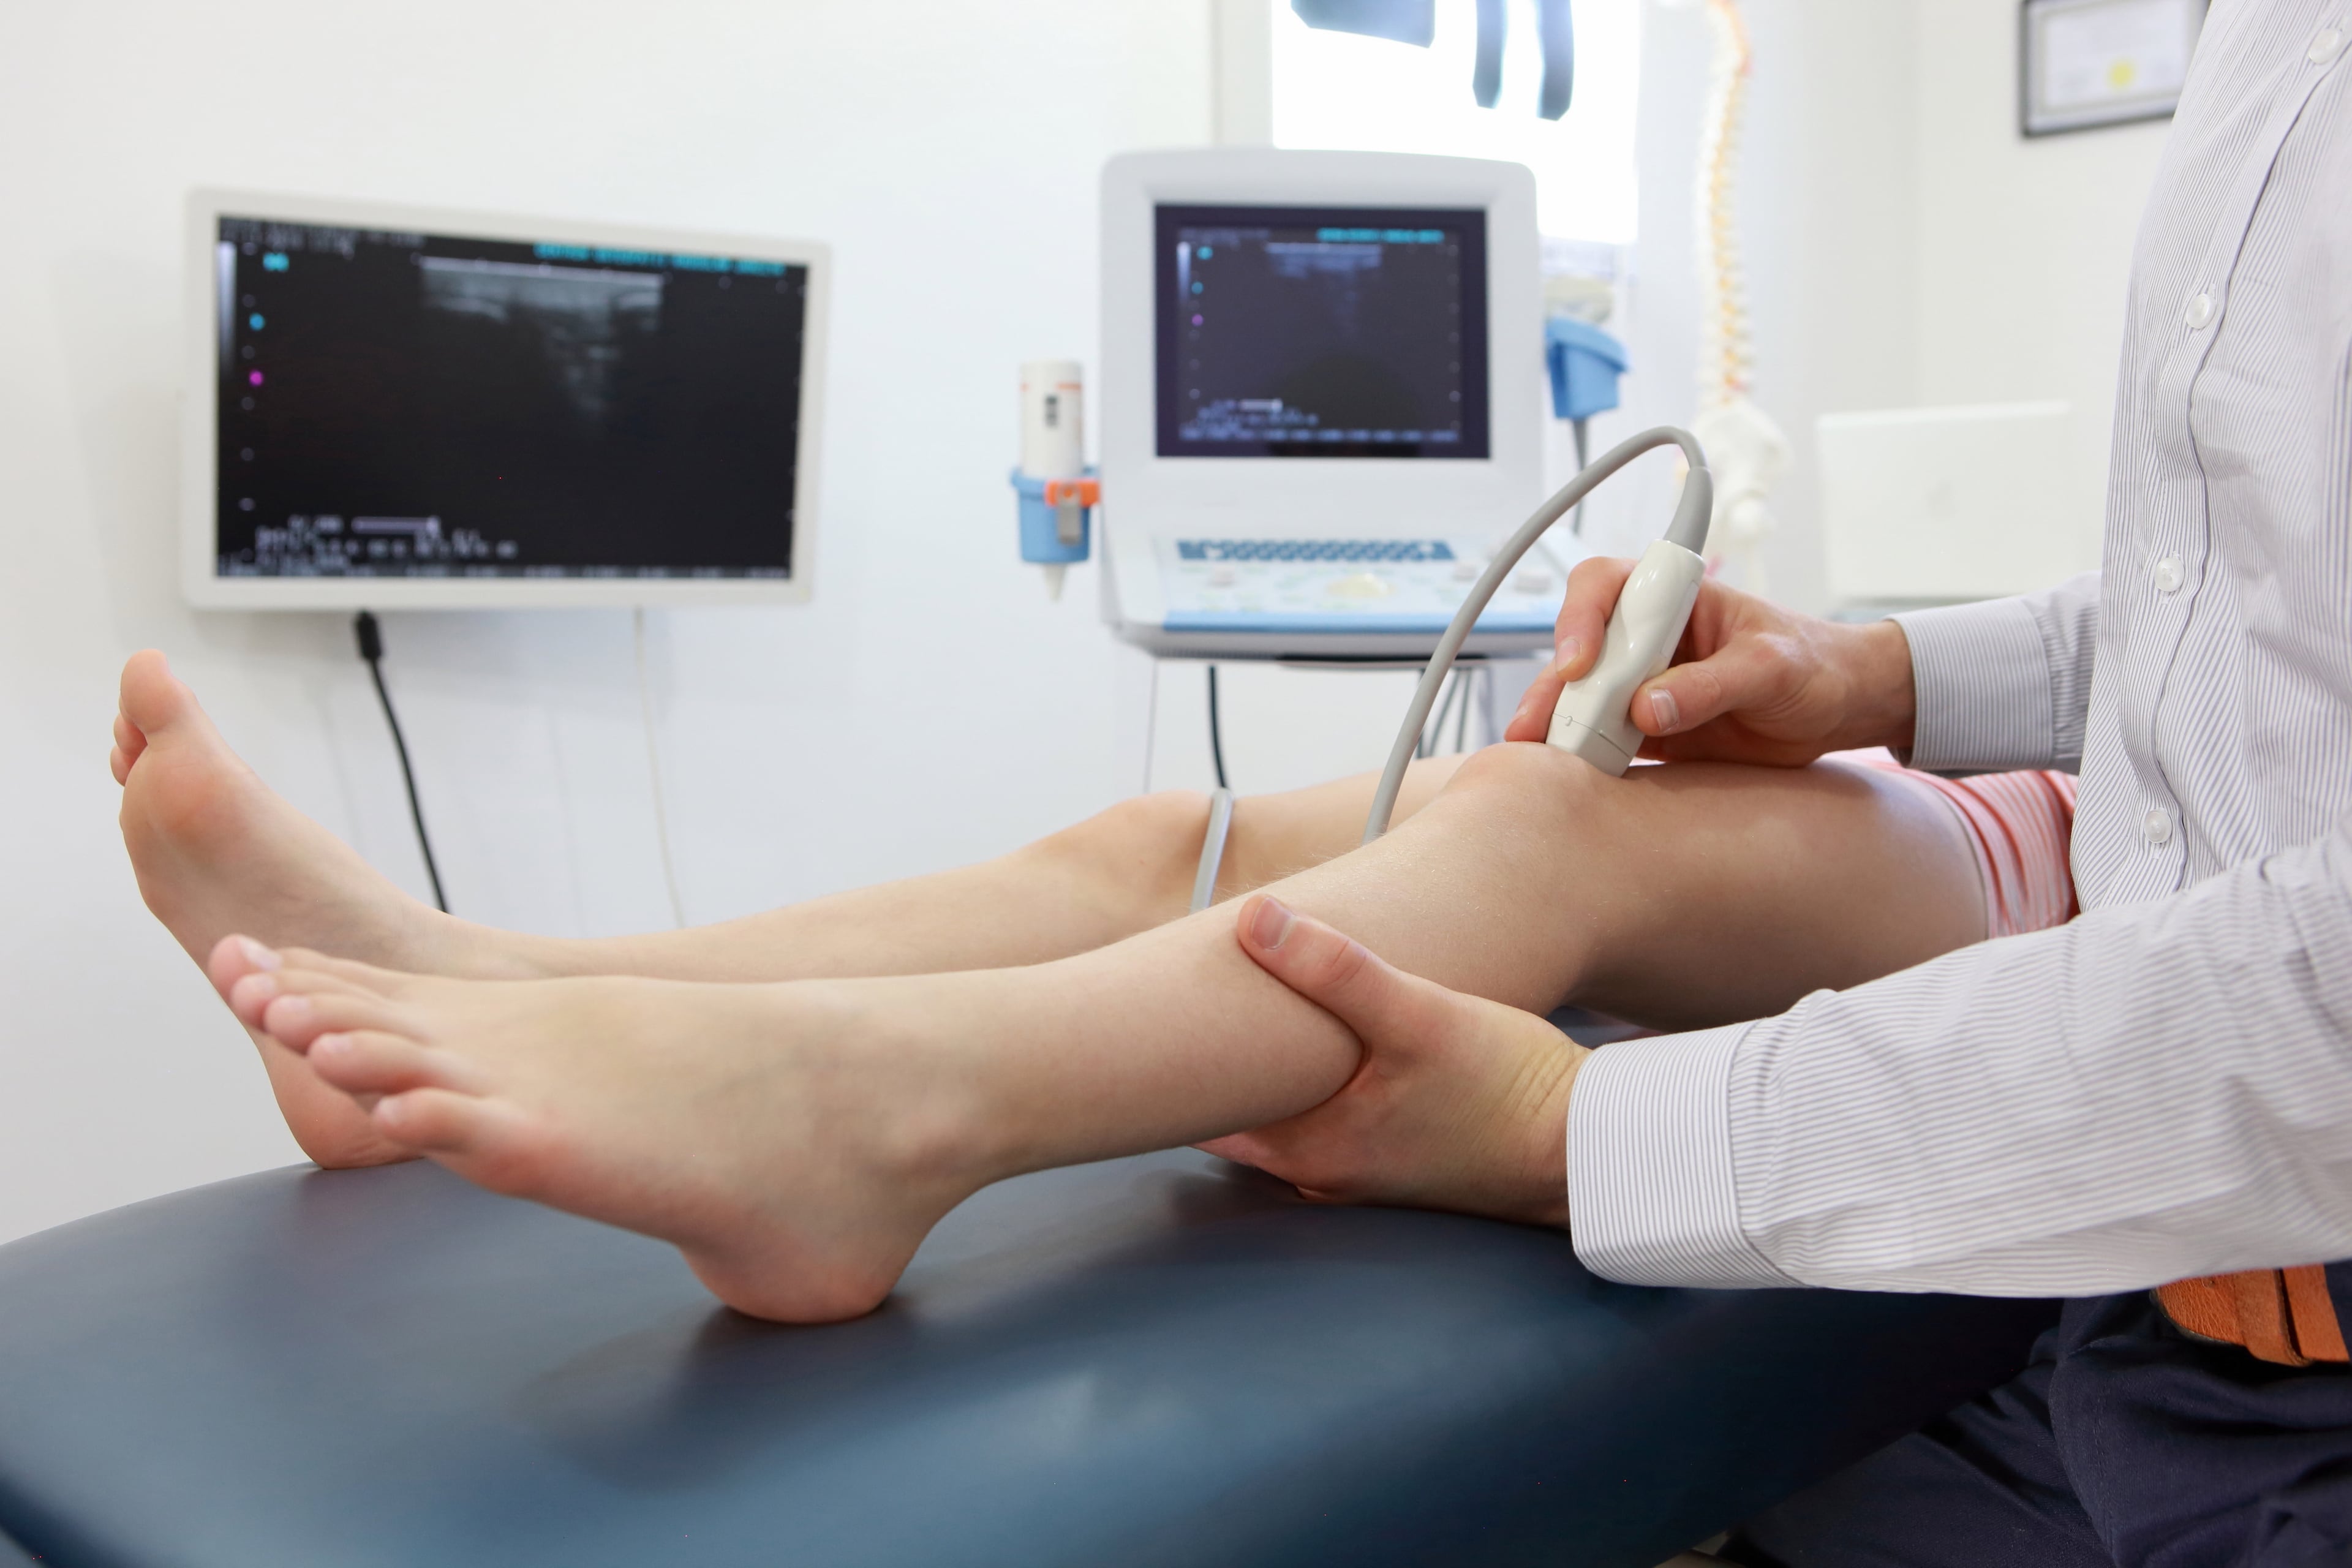 Лечение коленных суставов врач